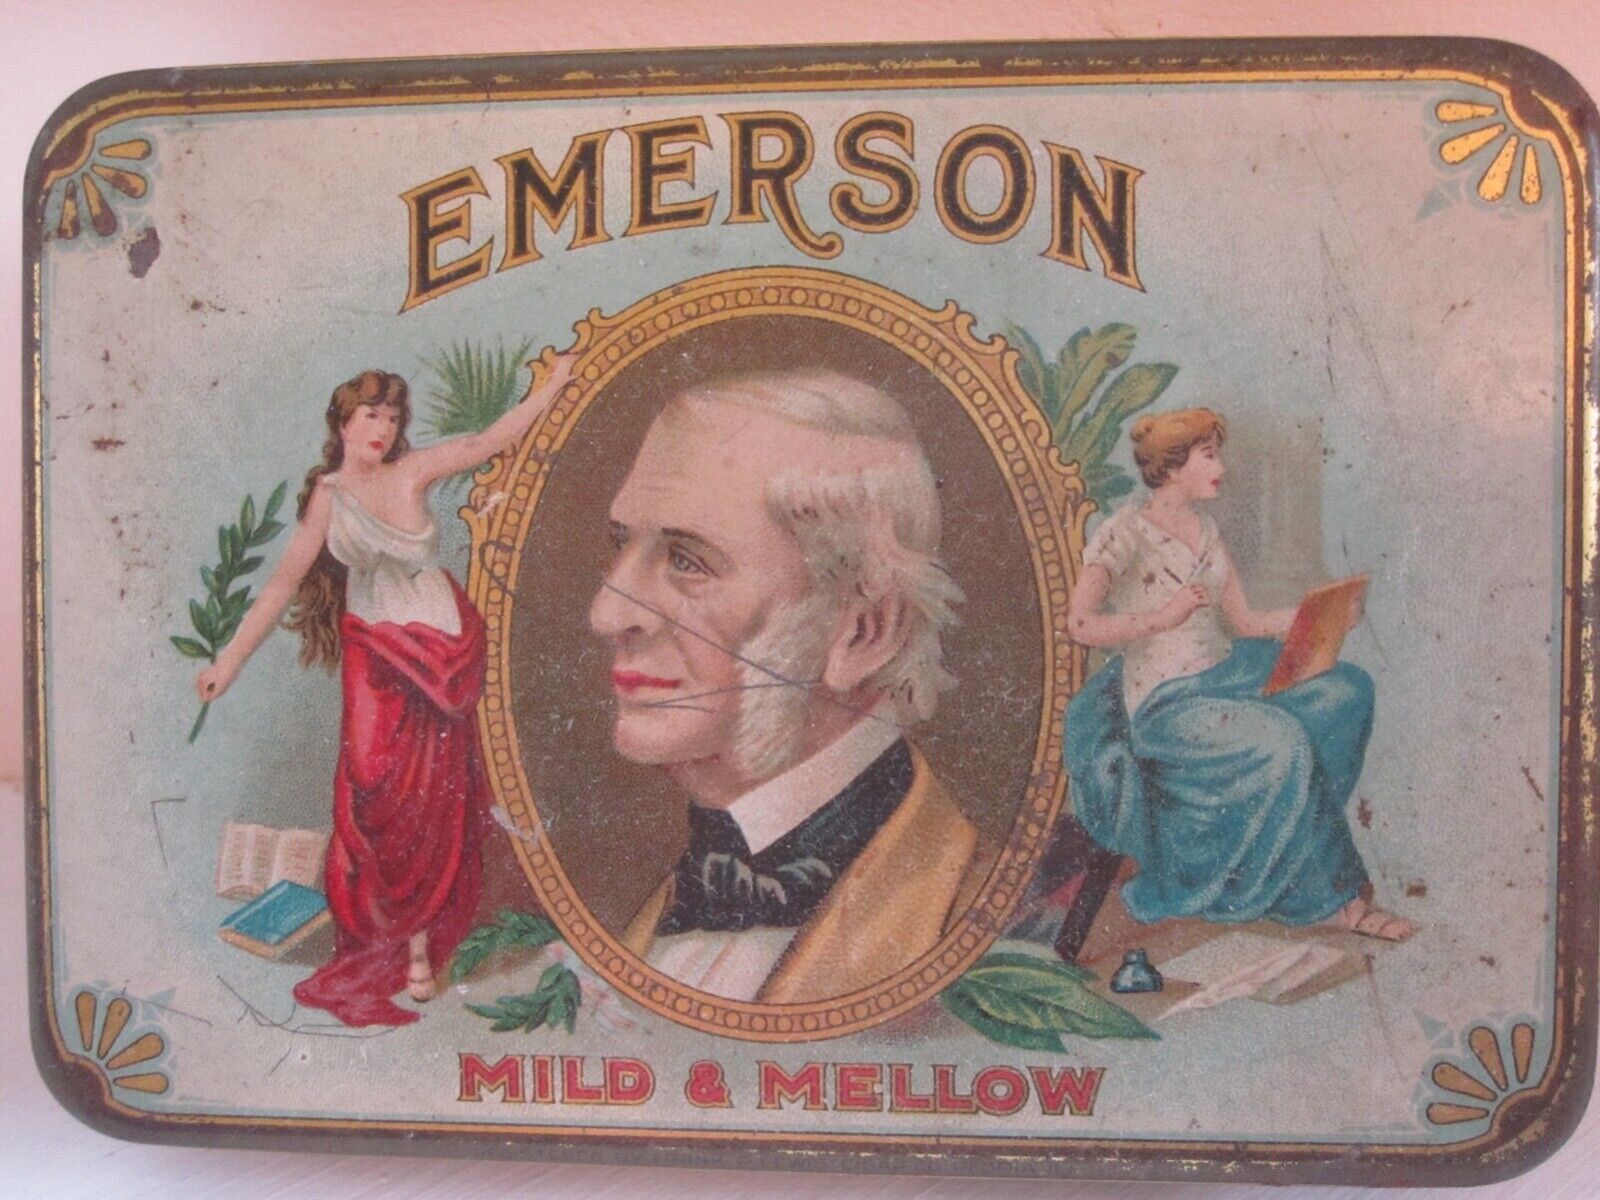 Antique Or Vintage Emerson Mild & Mellow Cigar Tin 5  X 3 1/2